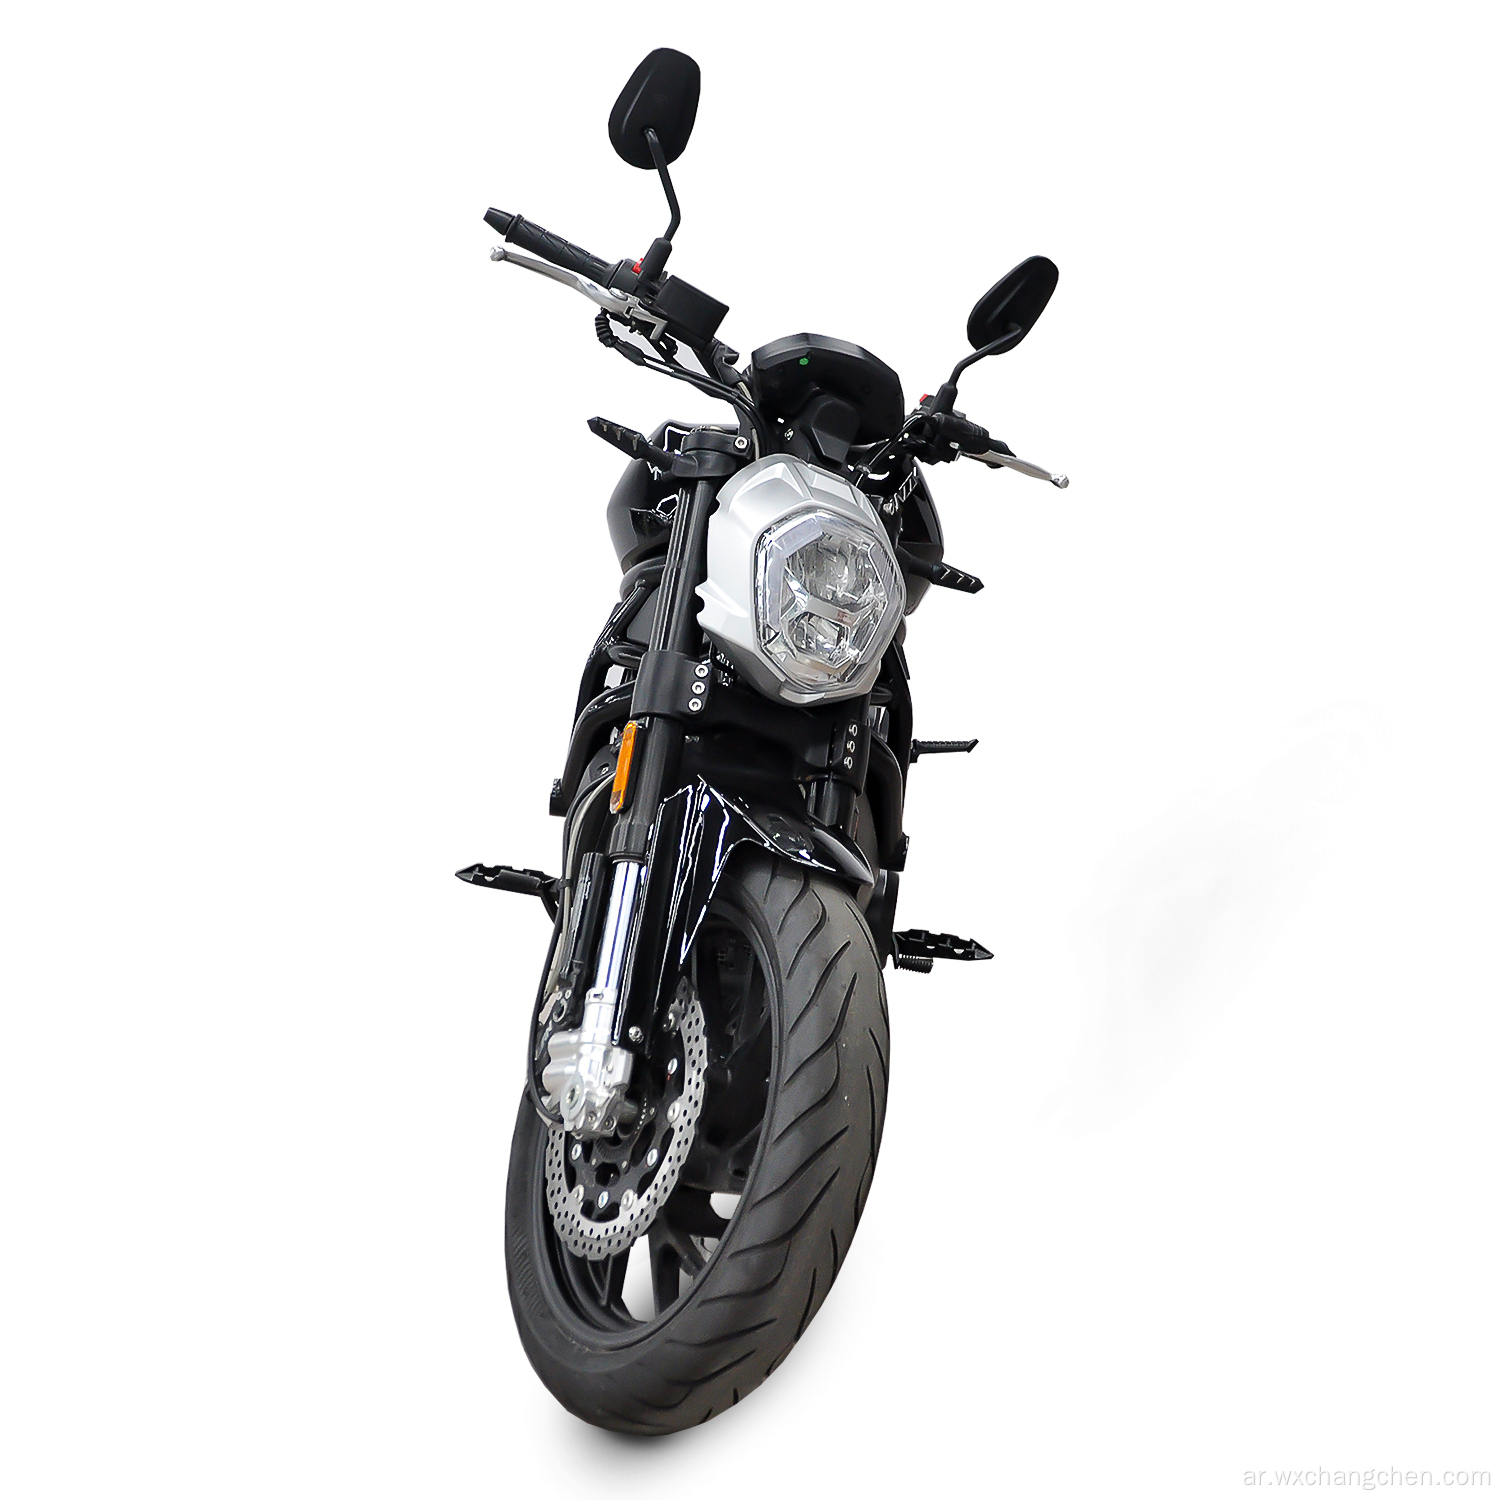 البيع المباشر مروحية الدراجات النارية للبنزين دراجة نارية 650 سم مكعب